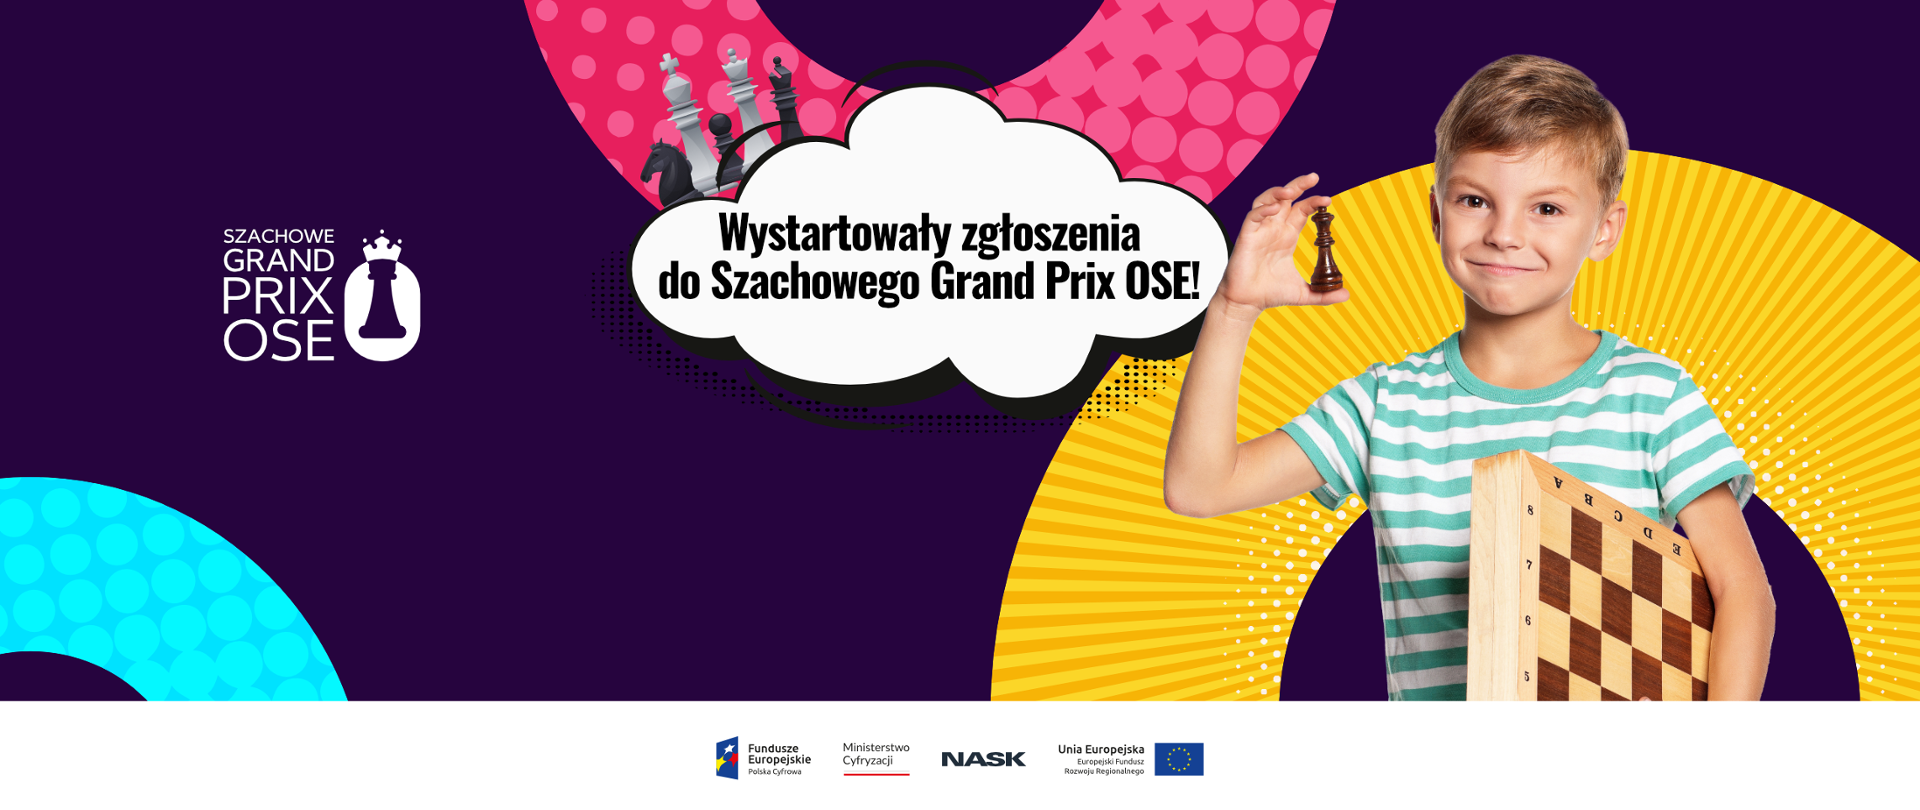 Chłopiec trzyma szachownicę i pionek. Tekst na grafice: Wystartowały zgłoszenia do Szachowego Grand Prix OSE! Na dole logotypy: Fundusze Europejskie, Ministerstwo Cyfryzacji, NASK, Unia Europejska.